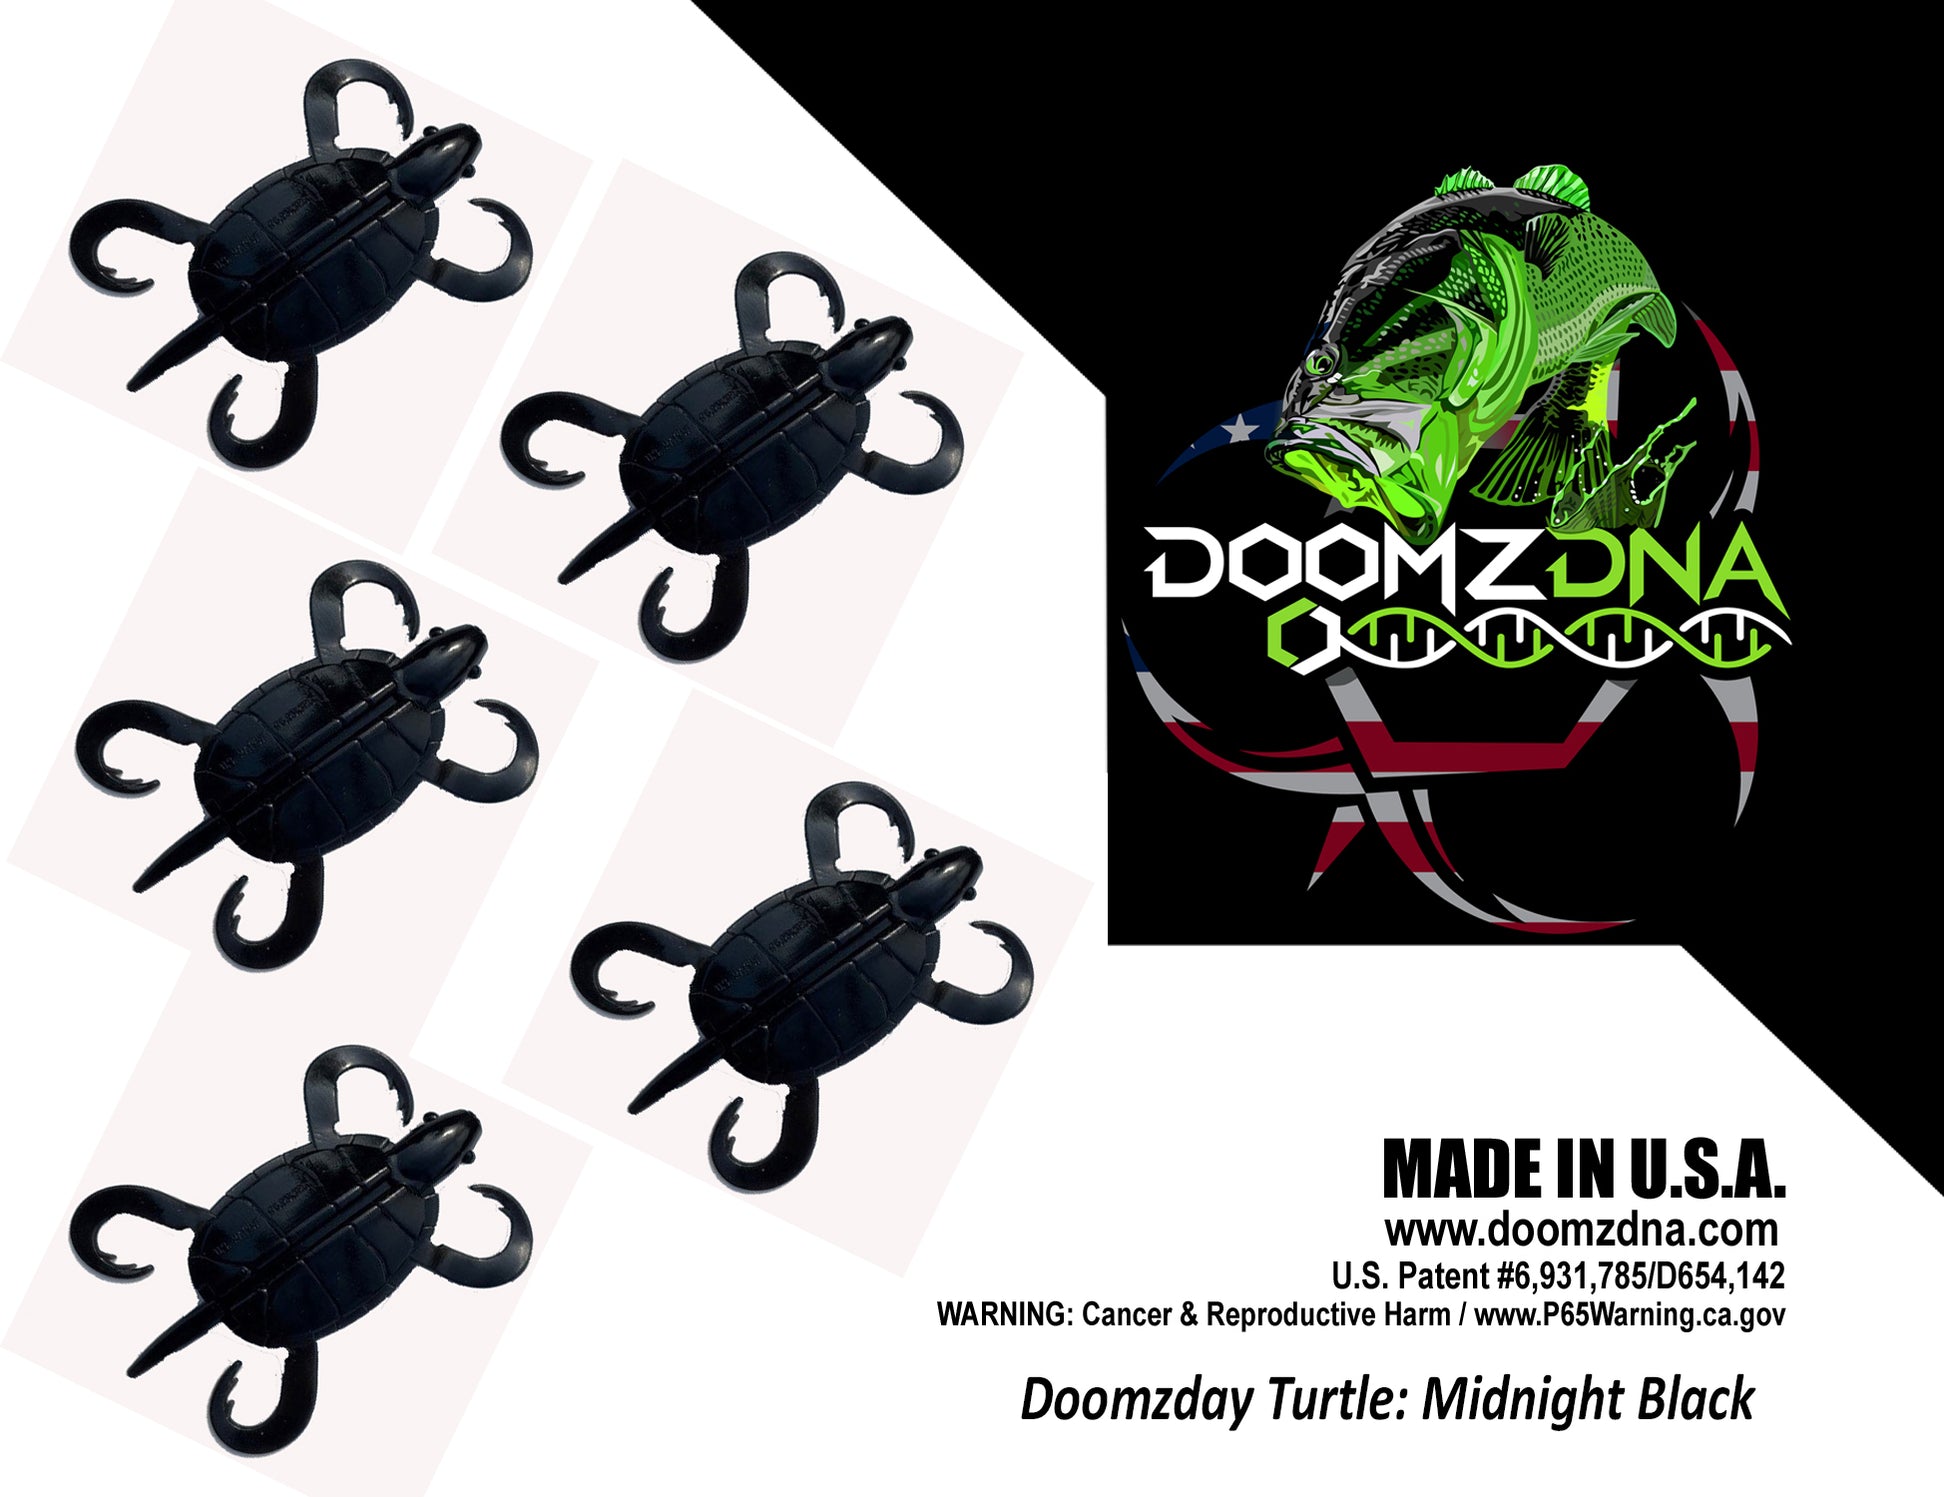 DDT3-Midnight Black Doomzday Turtle - Doomz Day Bass Turtle Lures